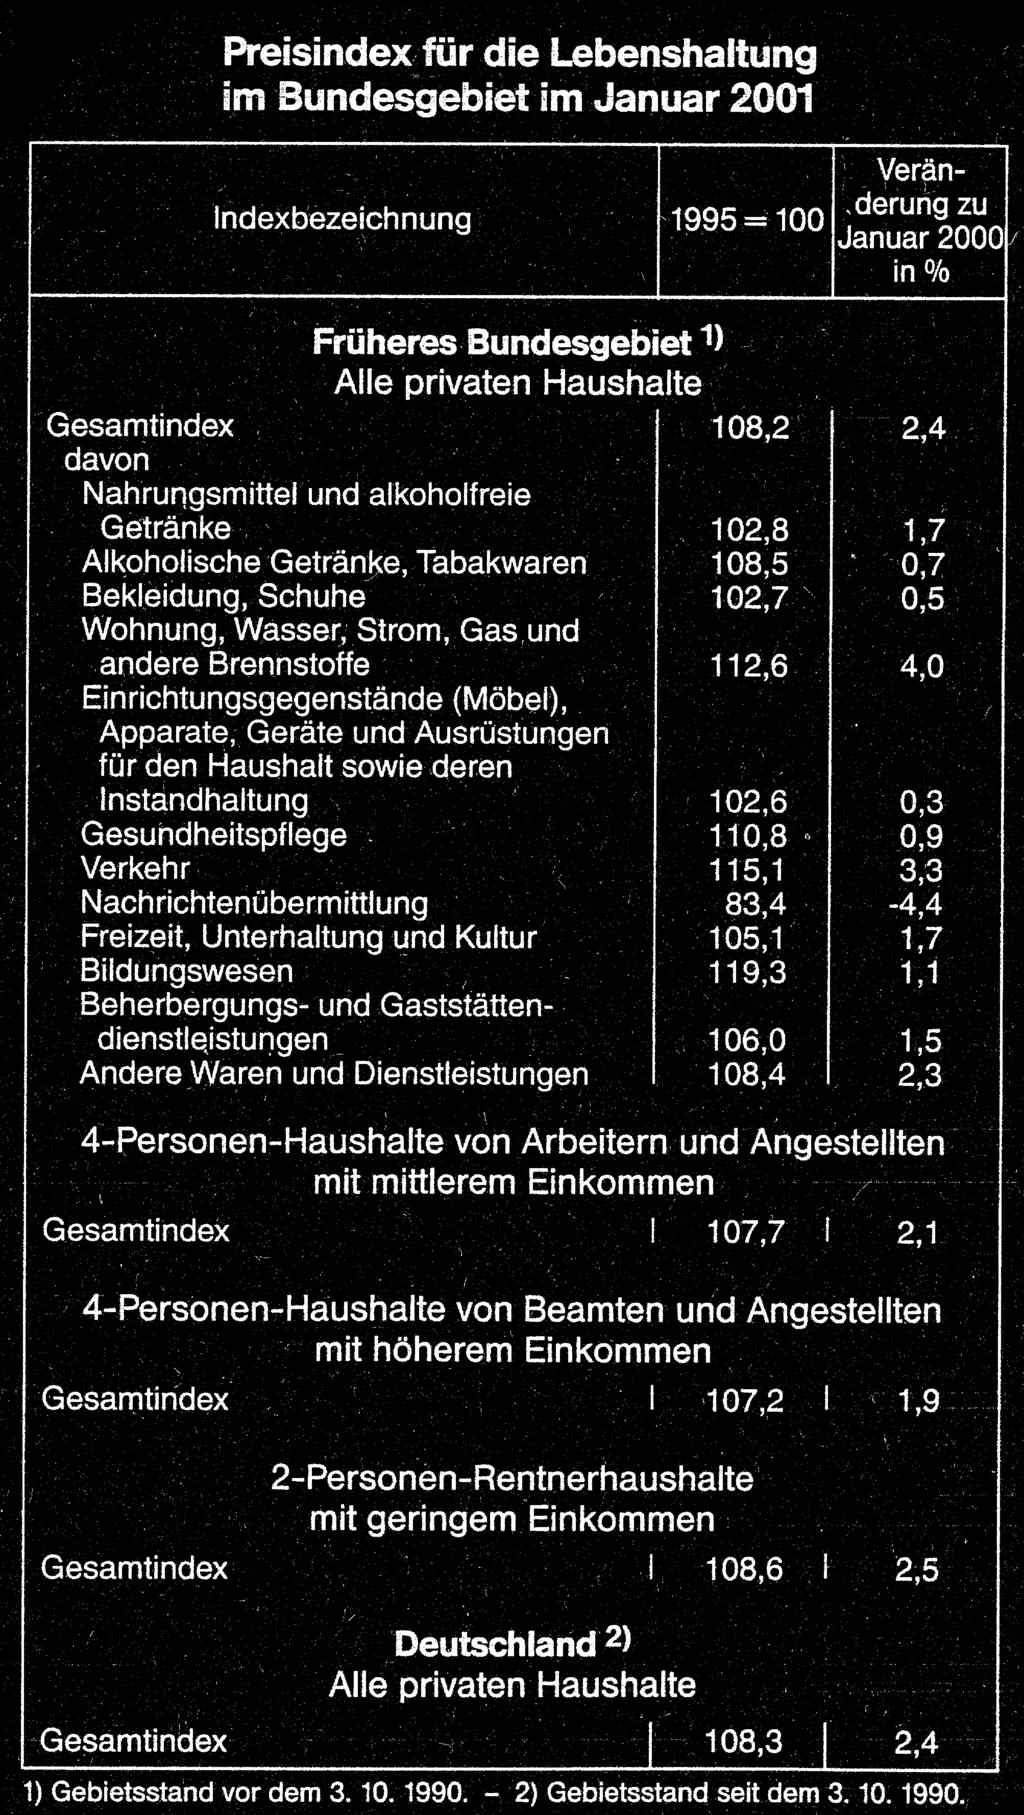 Morbach - 40 - Ausgabe 13/2001 Pneumatik I 30 Stunden mittwochs, 391,17 DM (200 Euro), Beginn: 2.